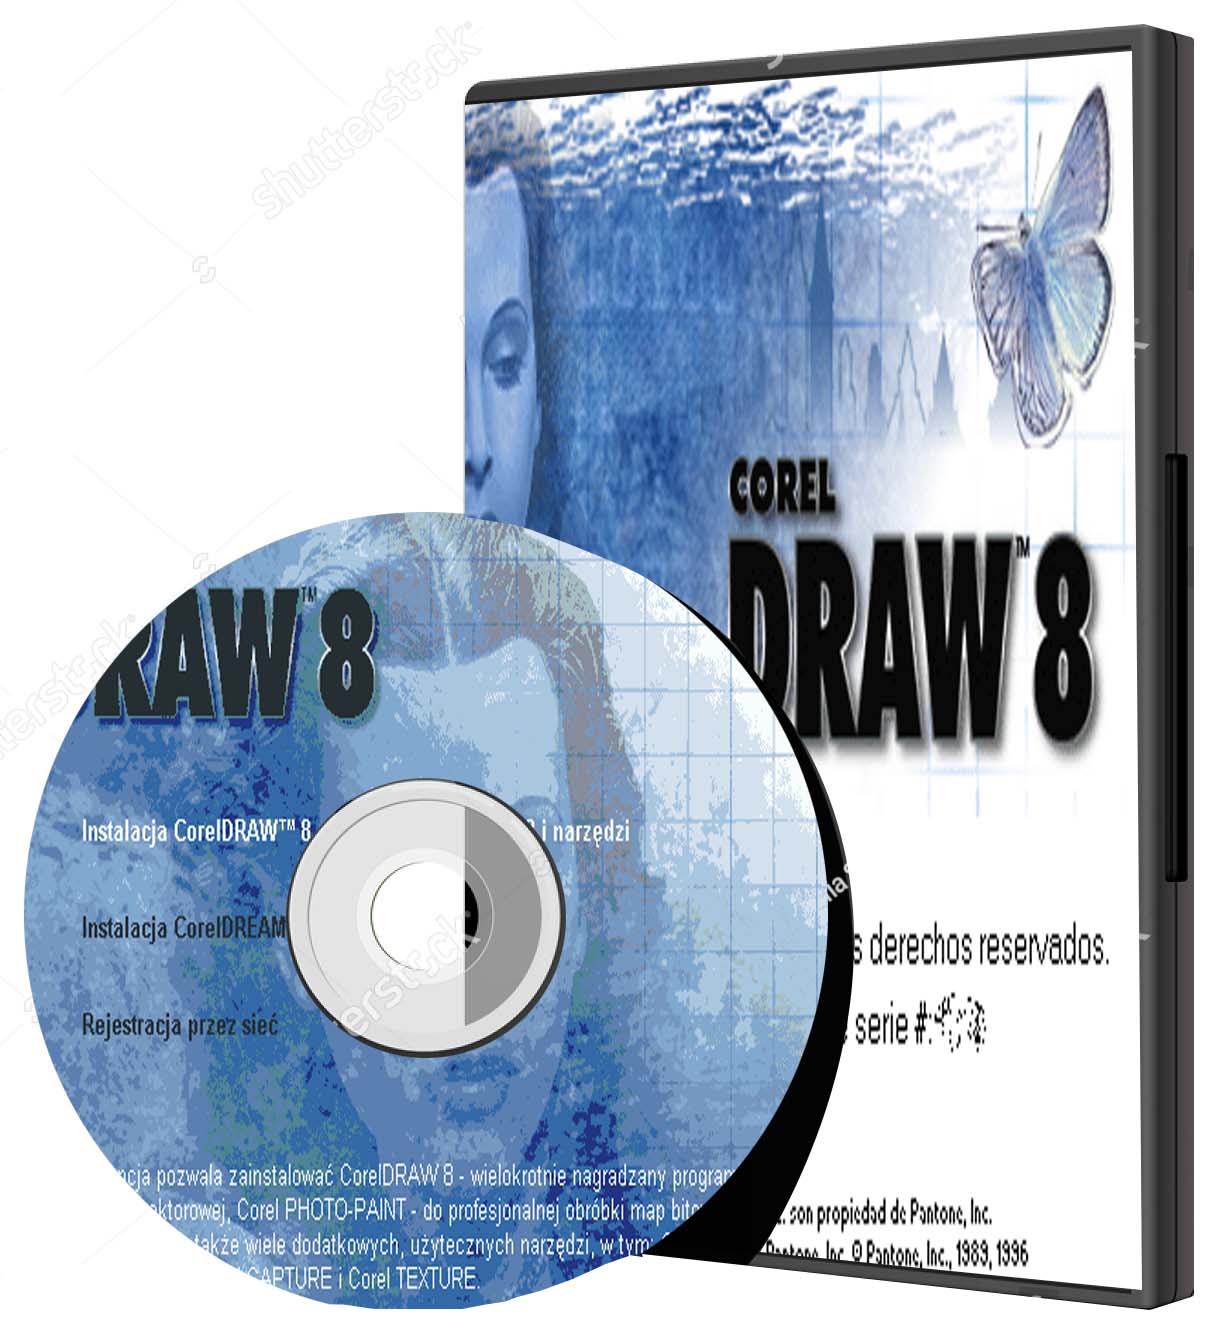 download coreldraw terbaru full version gratis windows 8